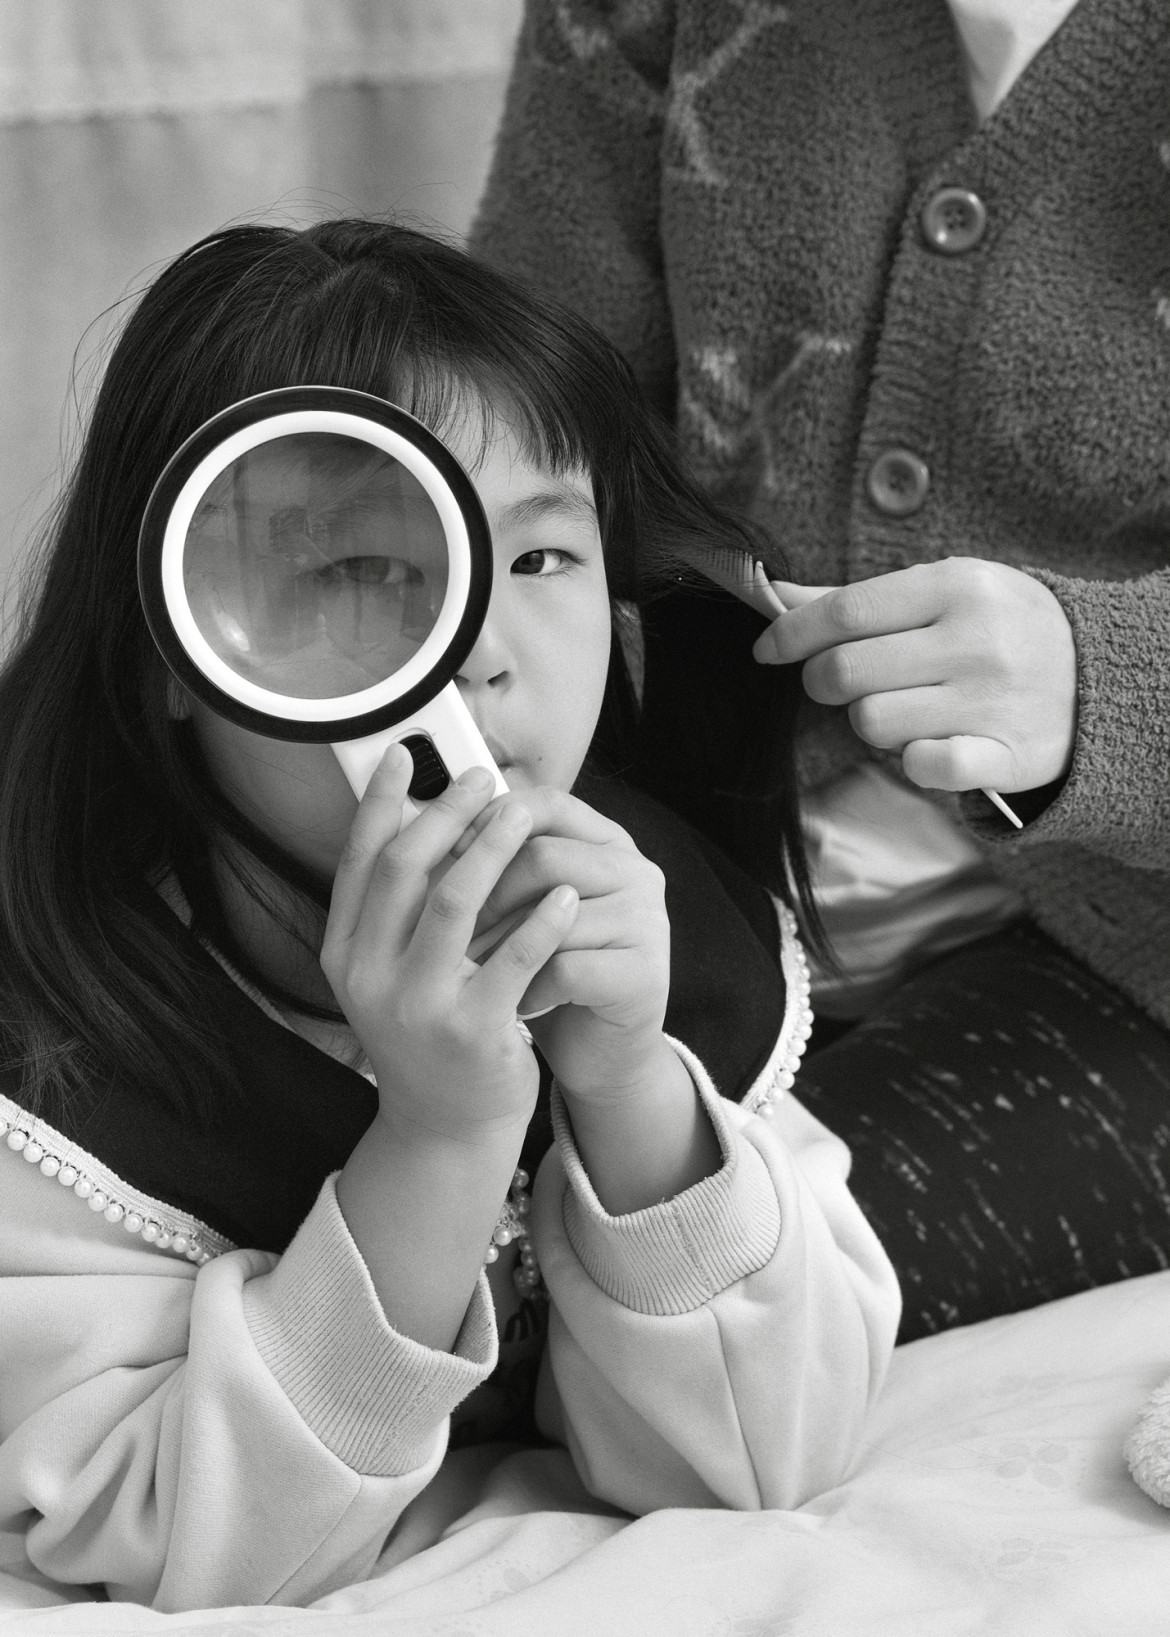 fot. Wang Naigon, "I Am Still With You", najlepszy projekt długoterminowy z regionu Azji / World Press Photo 2024<br></br><br></br>Projekt ten jest prywatnym przedsięwzięciem, mającym na celu zbadanie koncepcji zdjęć rodzinnych. W ścisłej współpracy z rodziną, fotografka opowiada historię Jiuer, młodej matki trójki dzieci z północnych Chin, która zyskuje więcej zrozumienia i uznania dla życia po zdiagnozowaniu raka. Przed operacją Jiuer poprosiła fotografkę o zrobienie kilku zdjęć rodzinnych, a później, gdy jej stan się pogorszył, prosiła o zarejestrowanie czasu spędzonego z dziećmi.